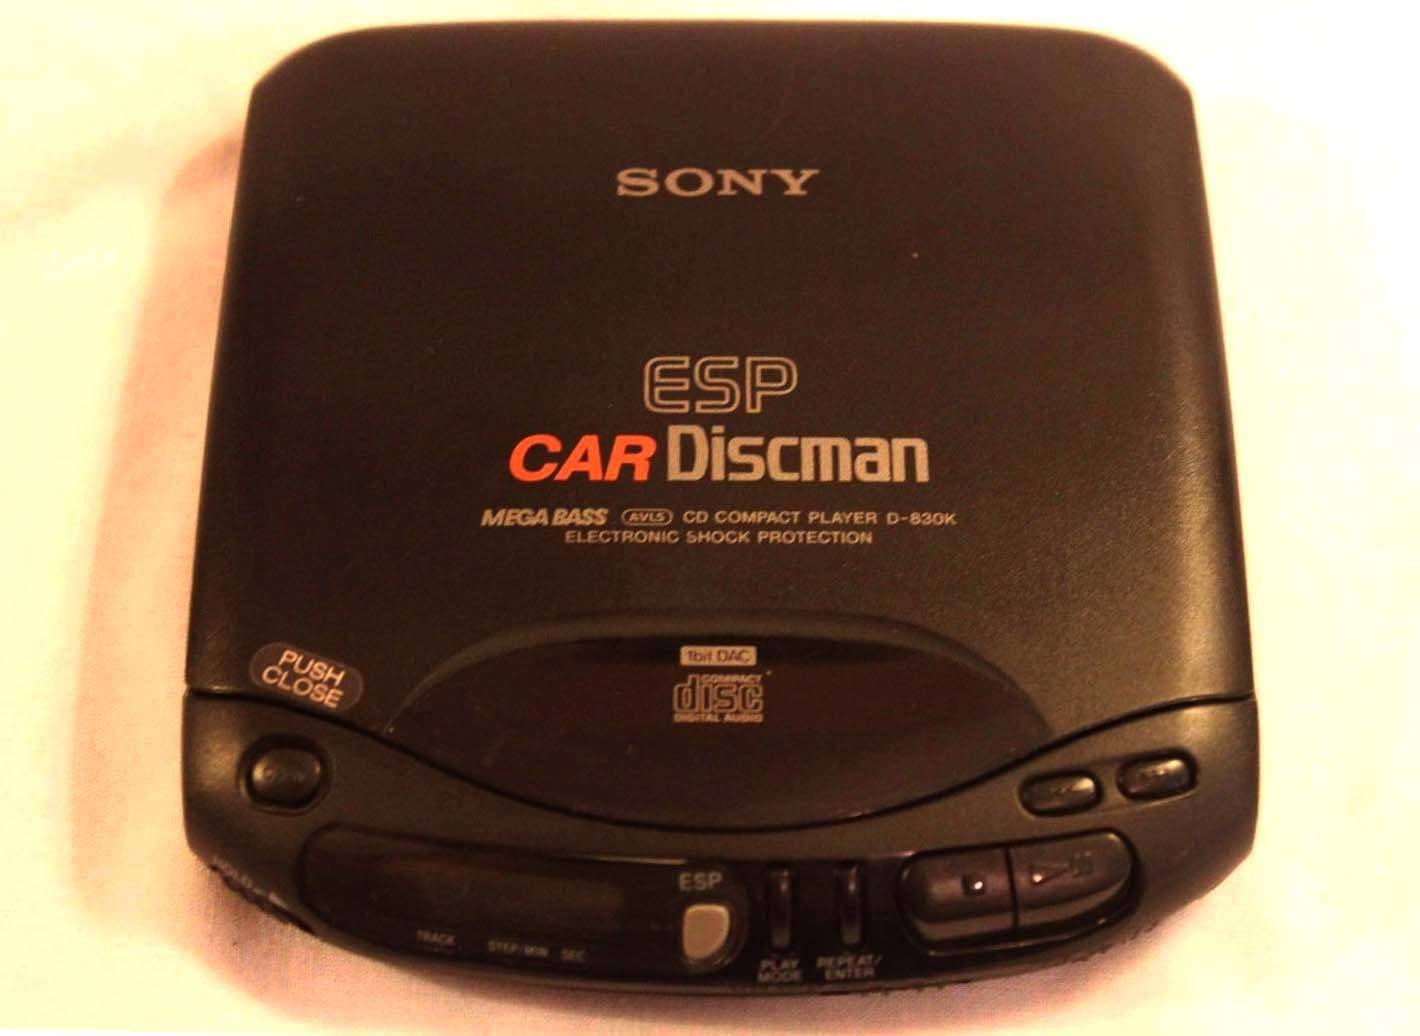 Sony D-830 (K)